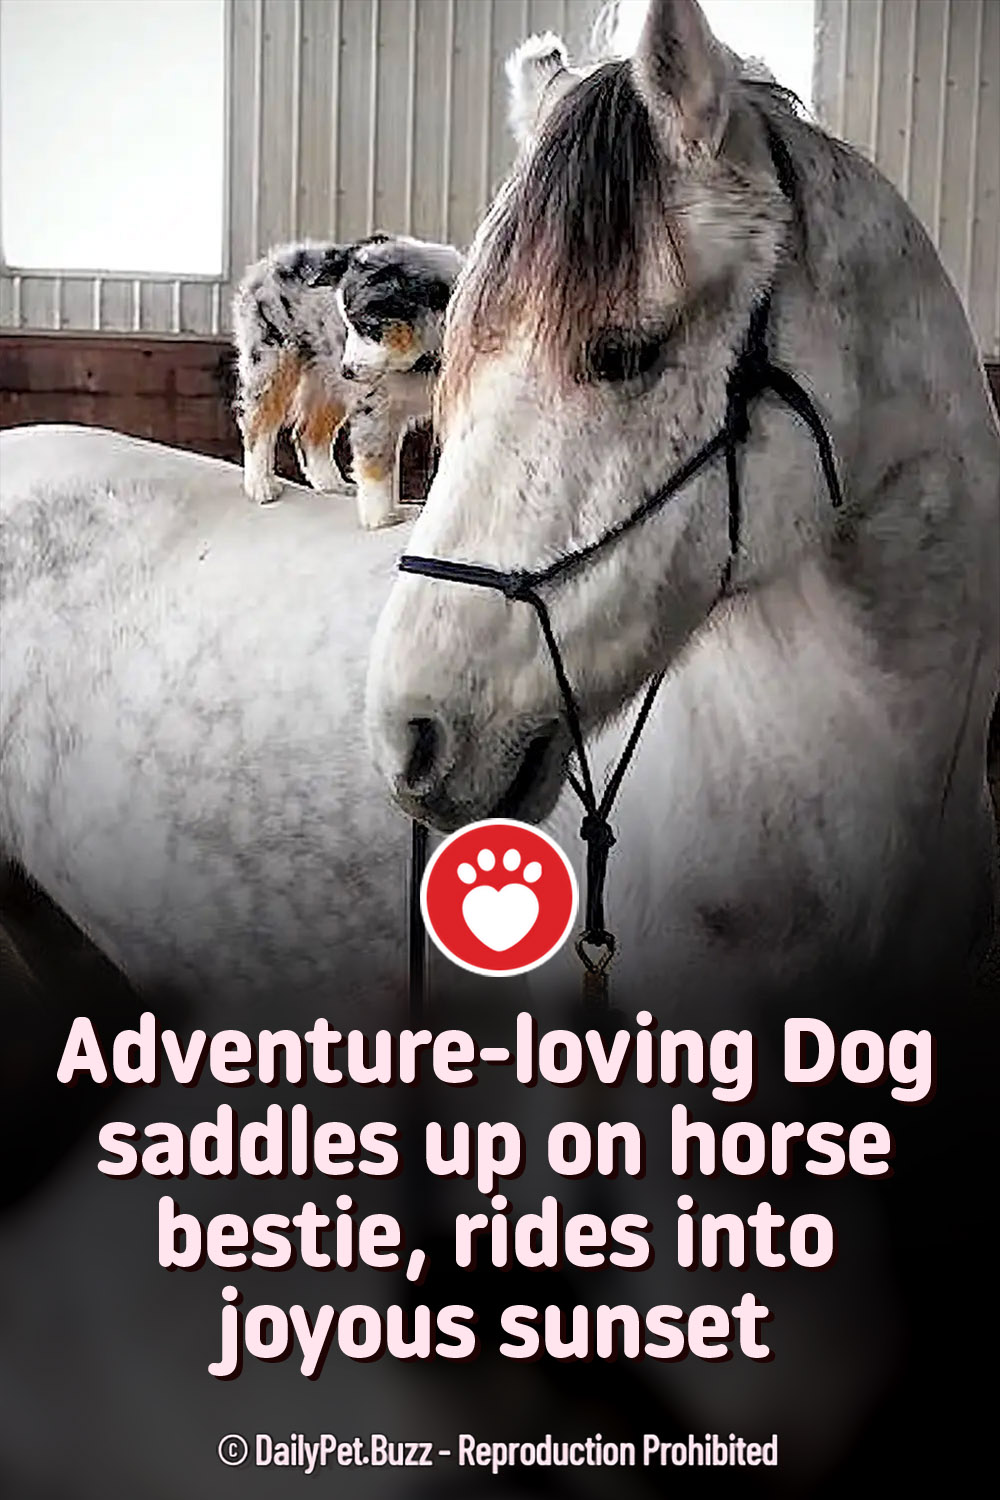 Adventure-loving Dog saddles up on horse bestie, rides into joyous sunset